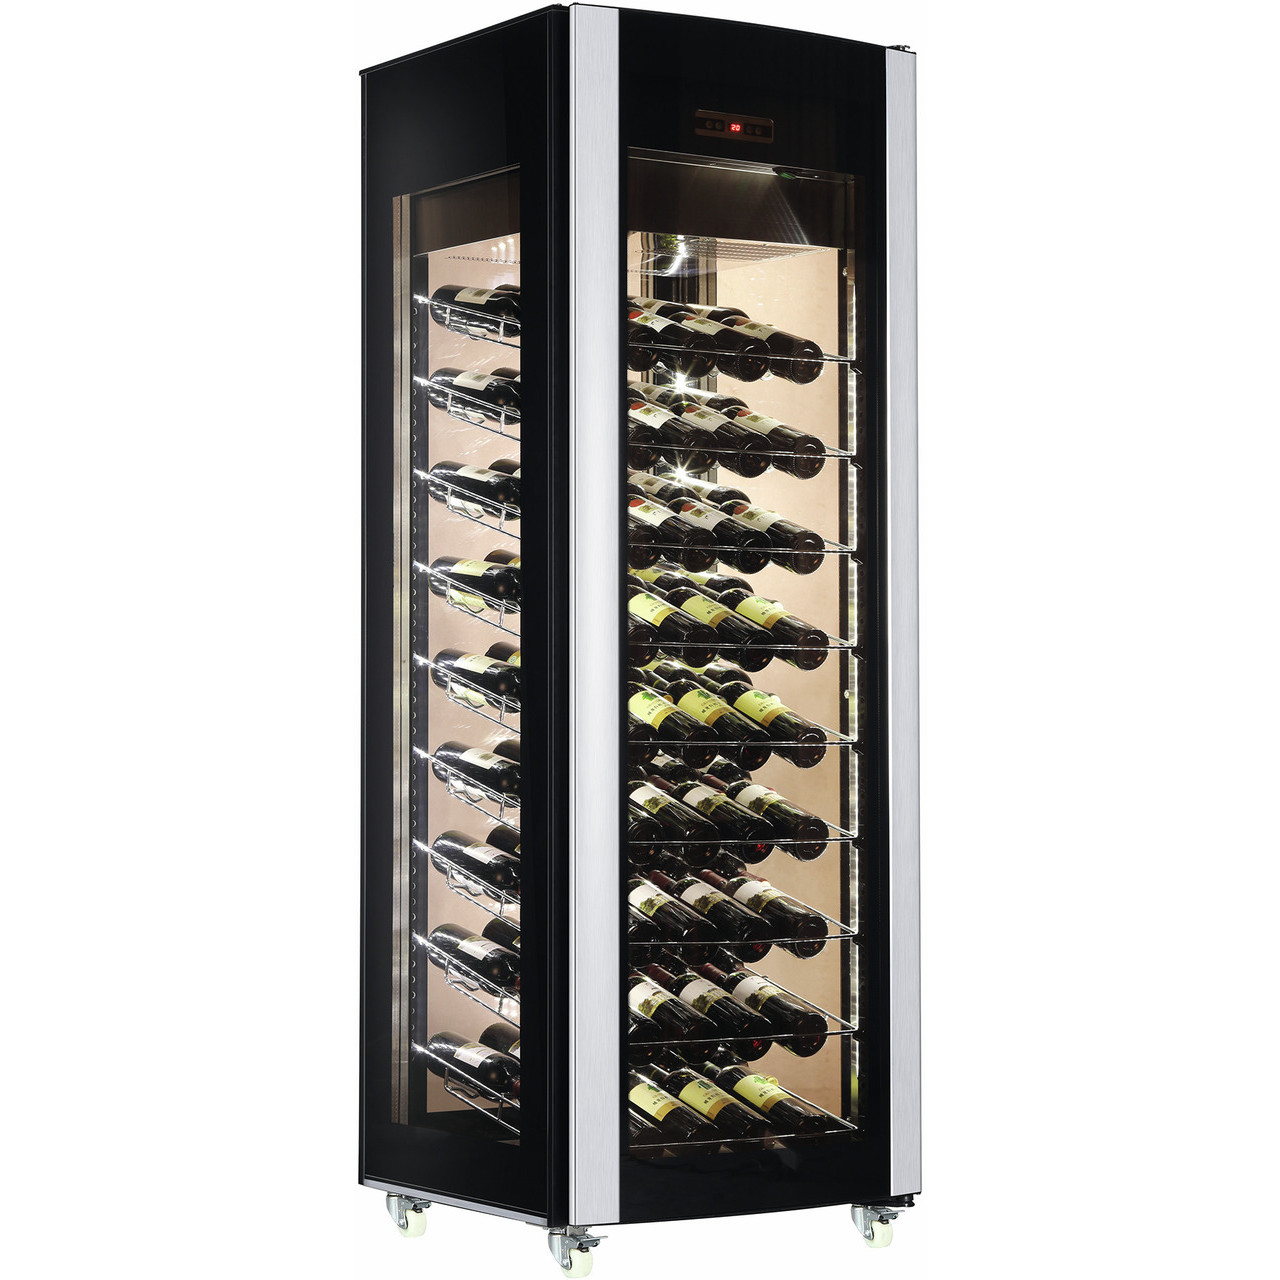 Weinkühlschrank für 81 Flaschen - Weinkühlschränke - Kühlschränke - Kühlen  - Großküchentechnik - TW Gastro-Service Online Shop